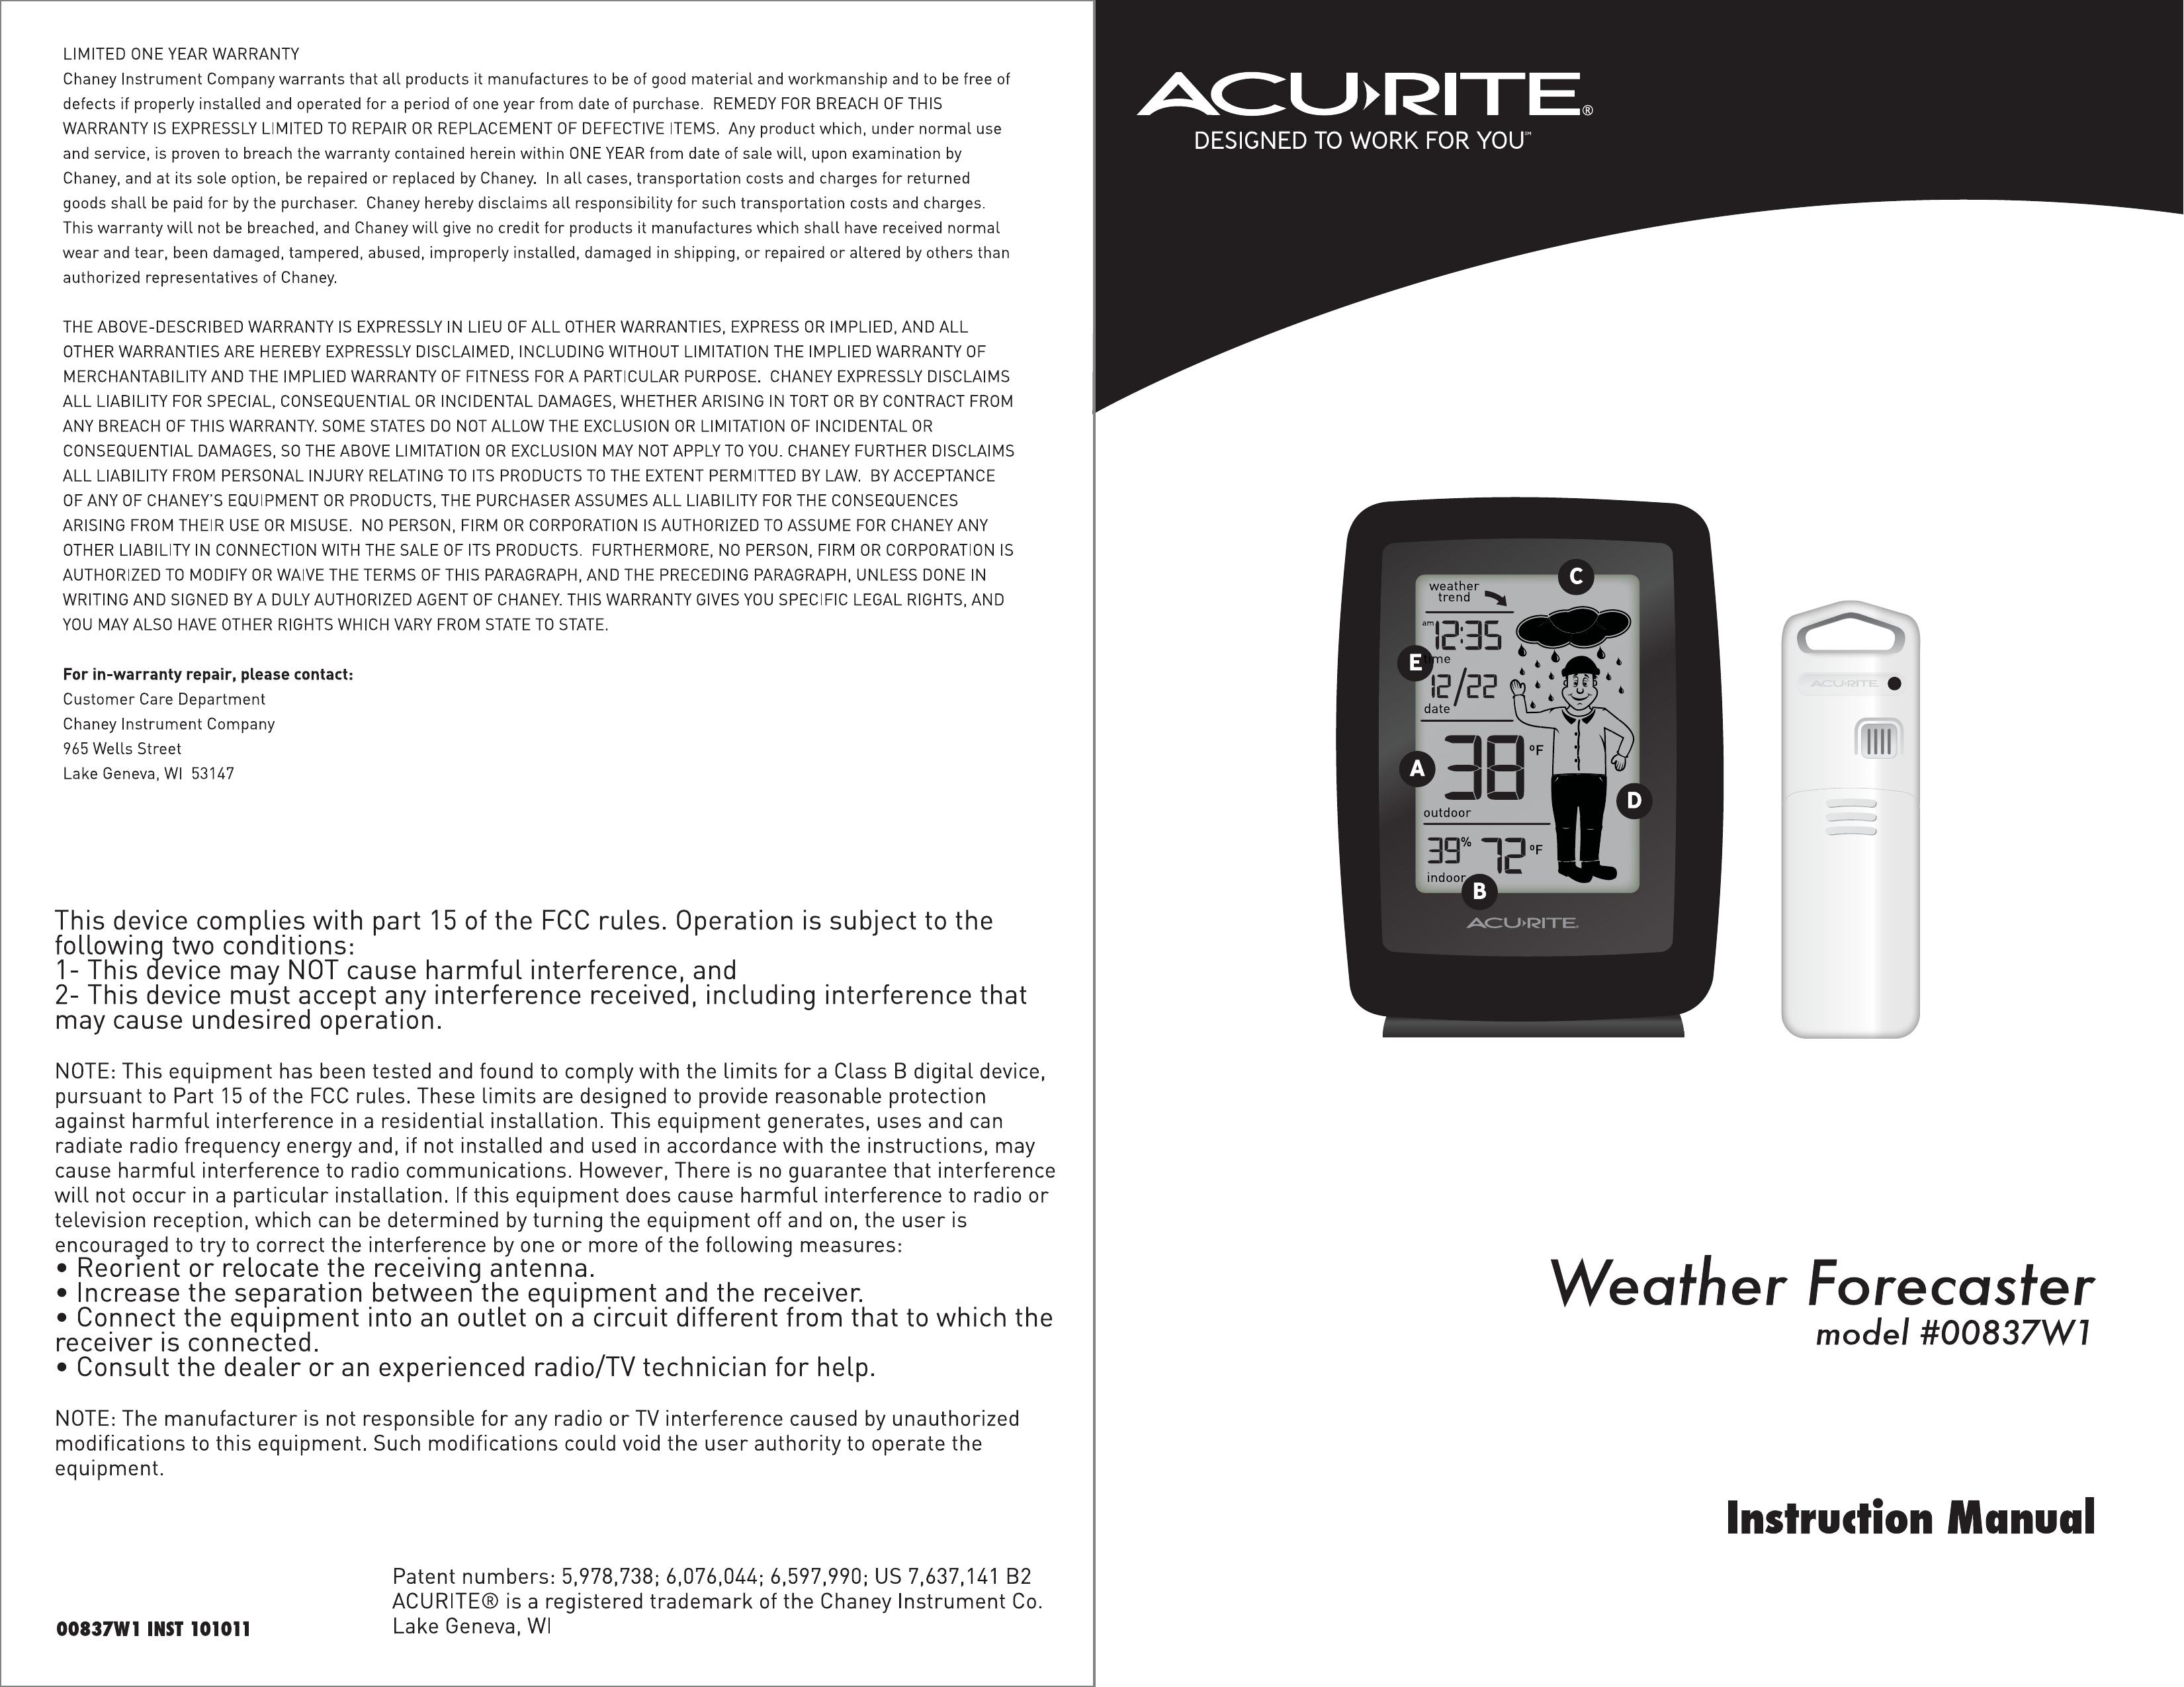 Acu-Rite #00837WI Weather Radio User Manual